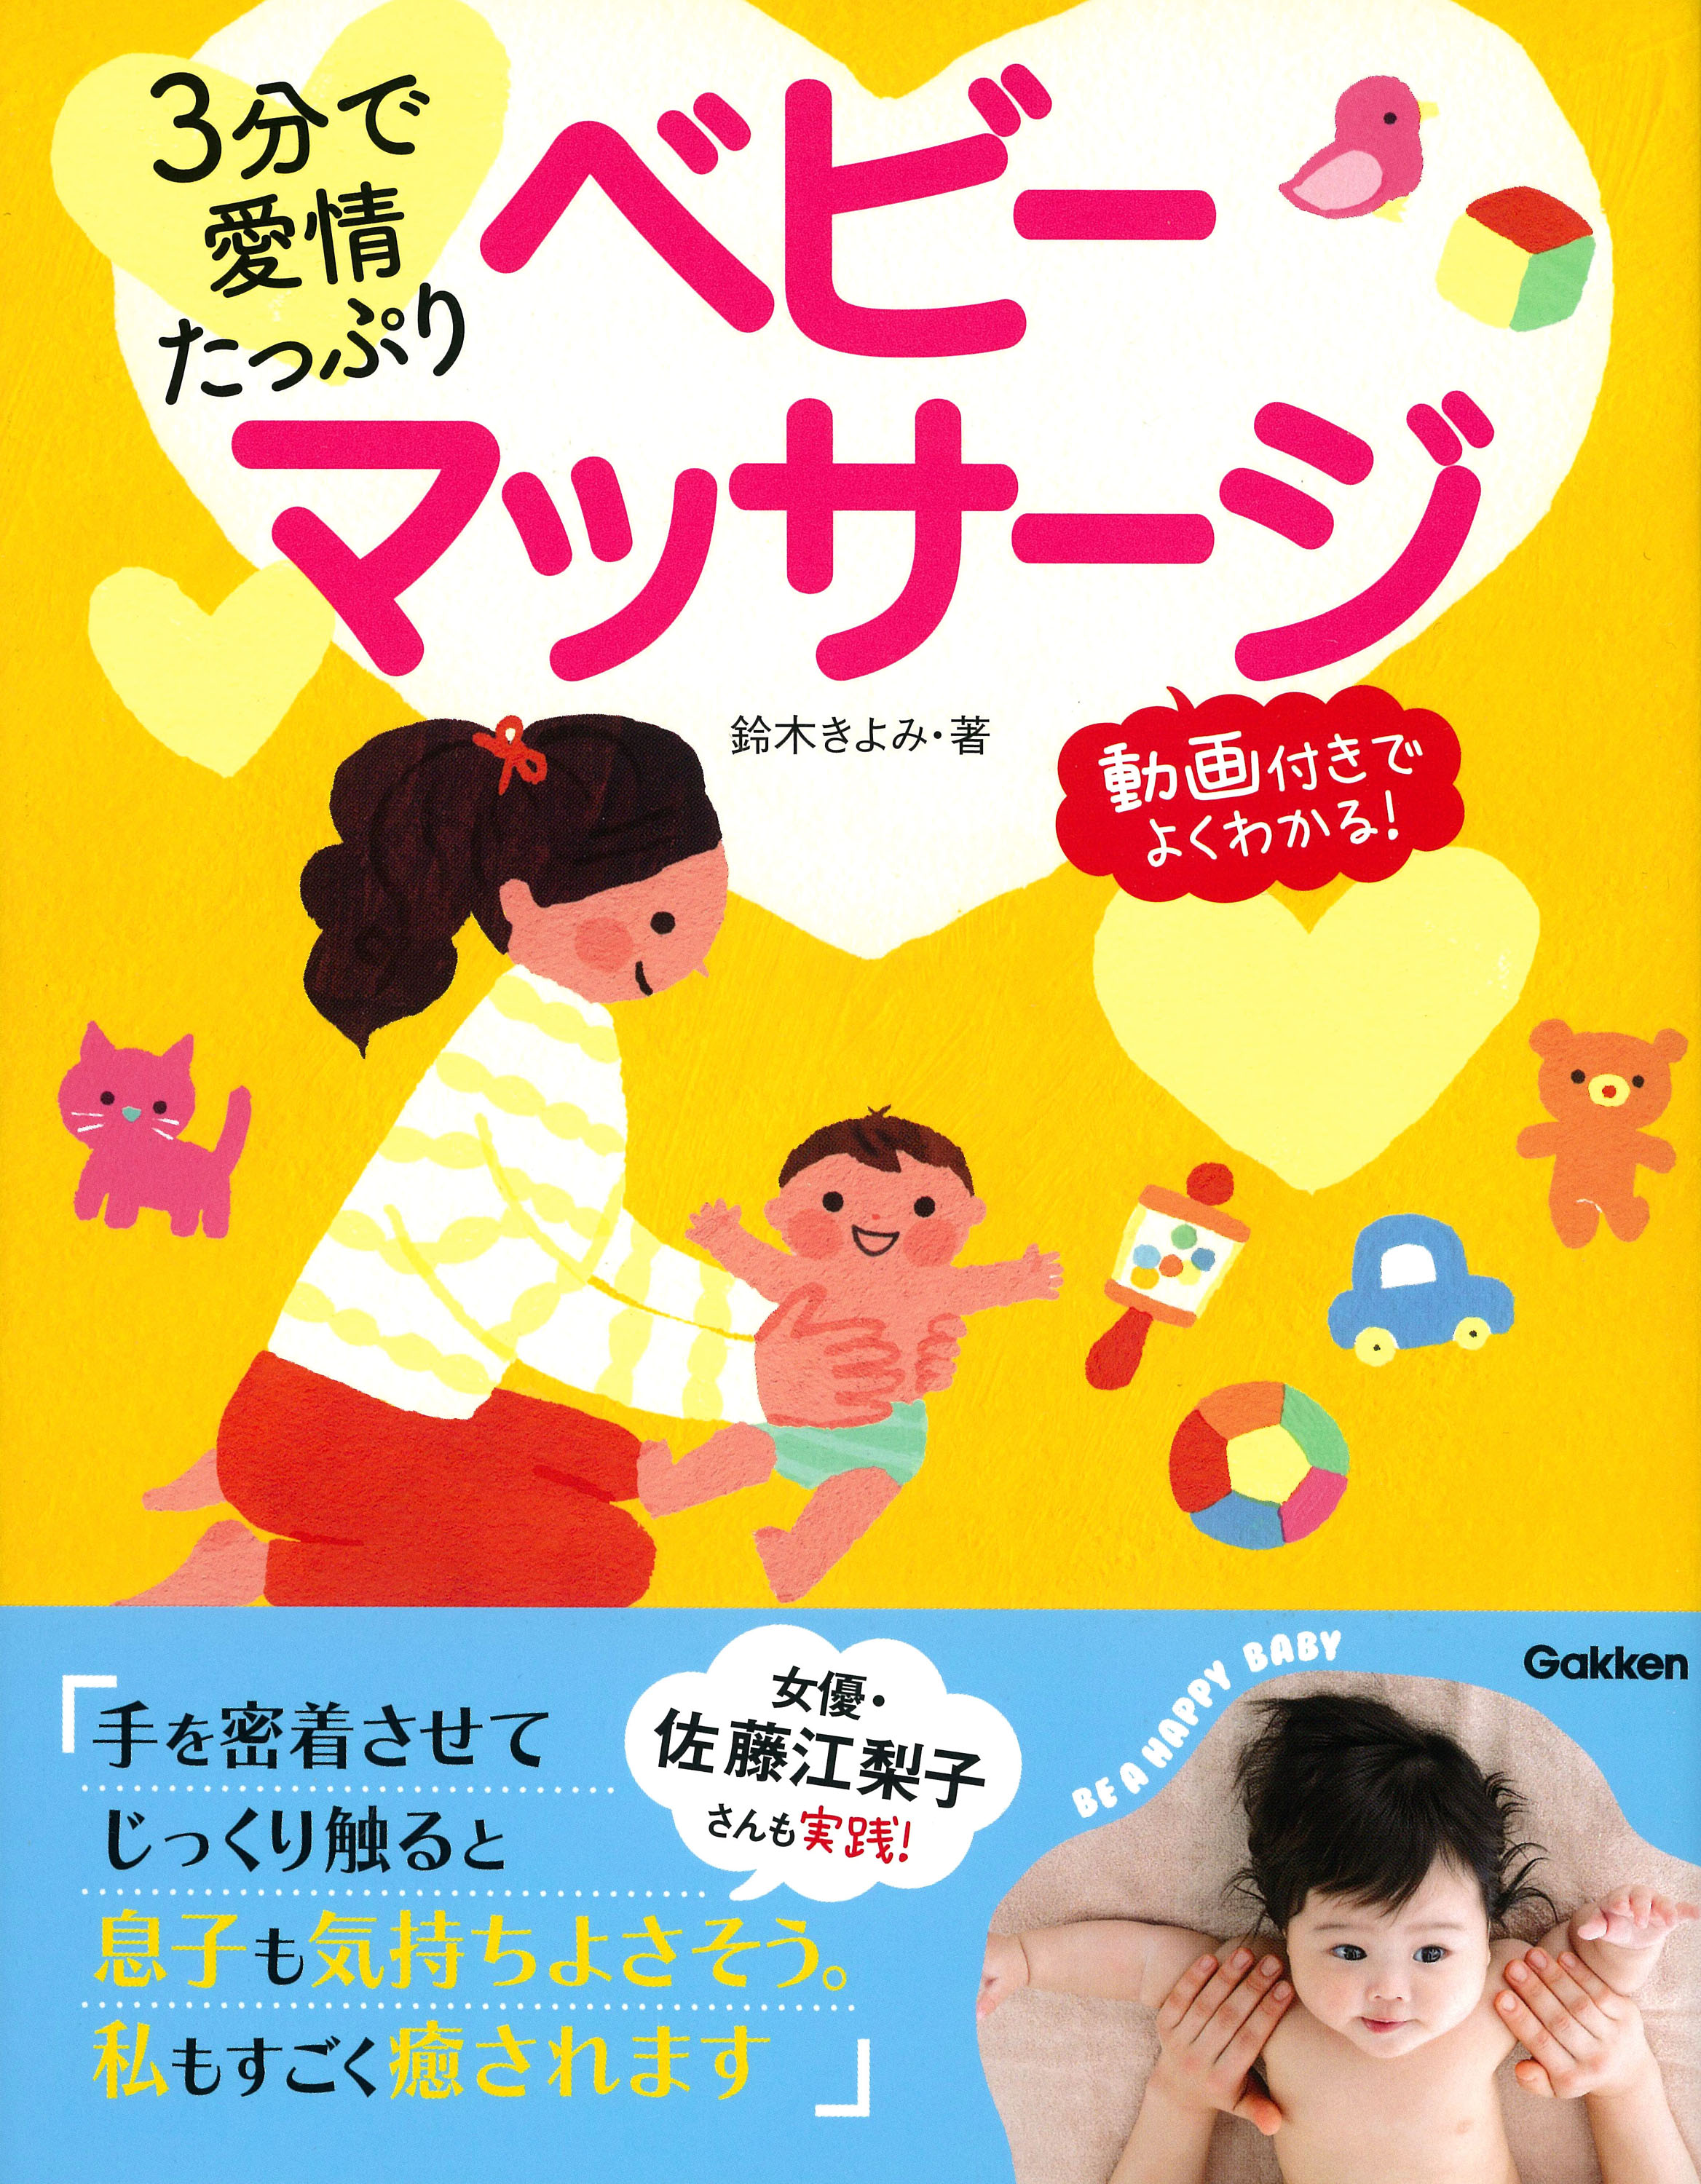 女優 佐藤江梨子も実践中のベビーマッサージが書籍に 赤ちゃんの足裏を見ればその子の素質がわかるチェックテスト その素質を伸ばすマッサージを紹介 株式会社 学研ホールディングスのプレスリリース